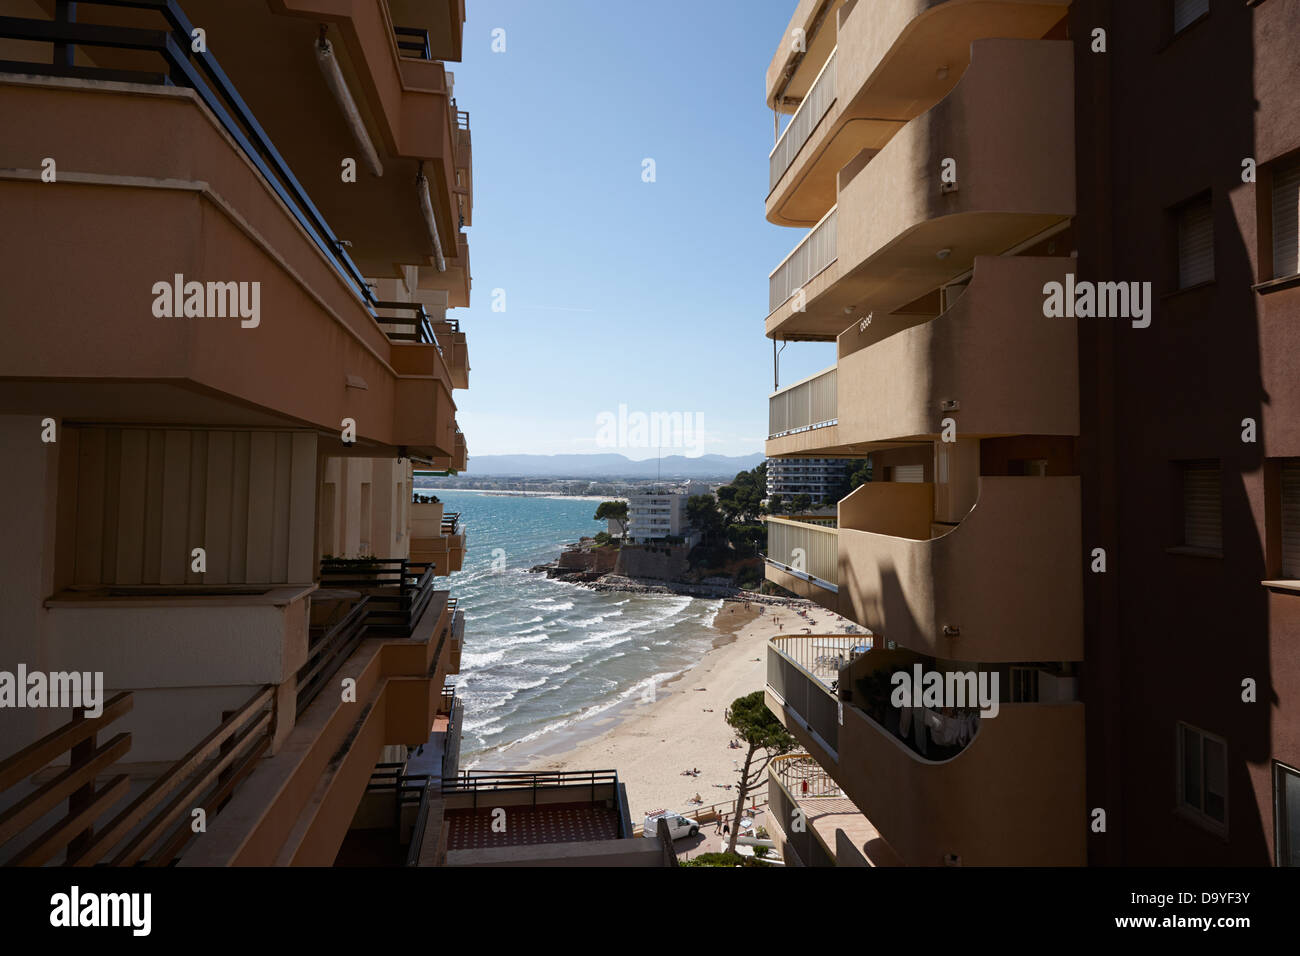 Densamente salou propiedades frente al mar en la costa dorada cataluña españa Foto de stock